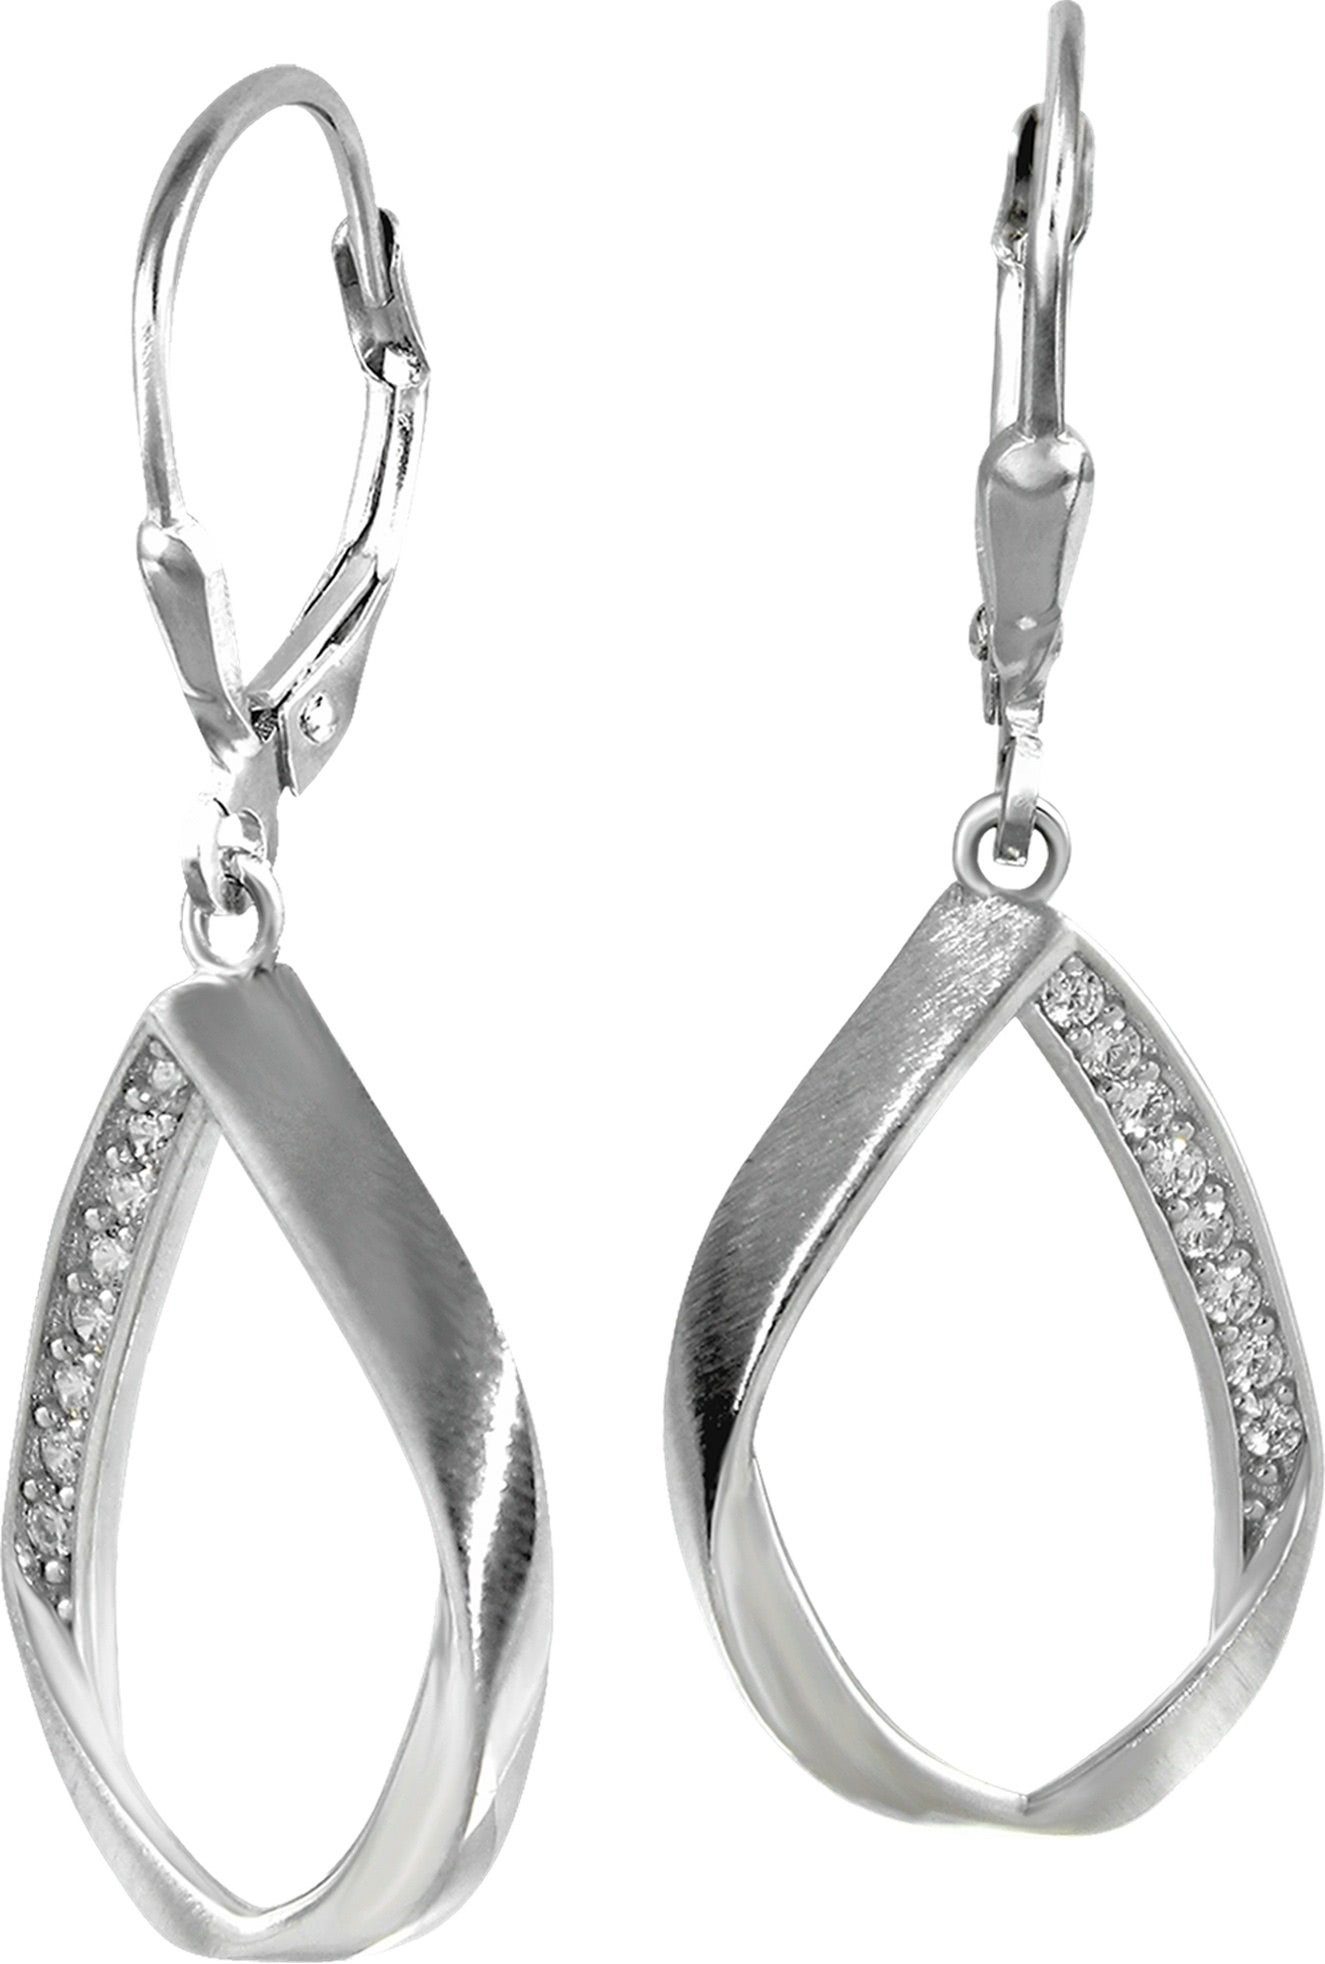 SilberDream Paar Ohrhänger SilberDream Damen Ohrhänger 925 Ohrringe (Ohrhänger), Damen Ohrhänger Swing aus 925 Sterling Silber, glanz, matt, Farbe: sil